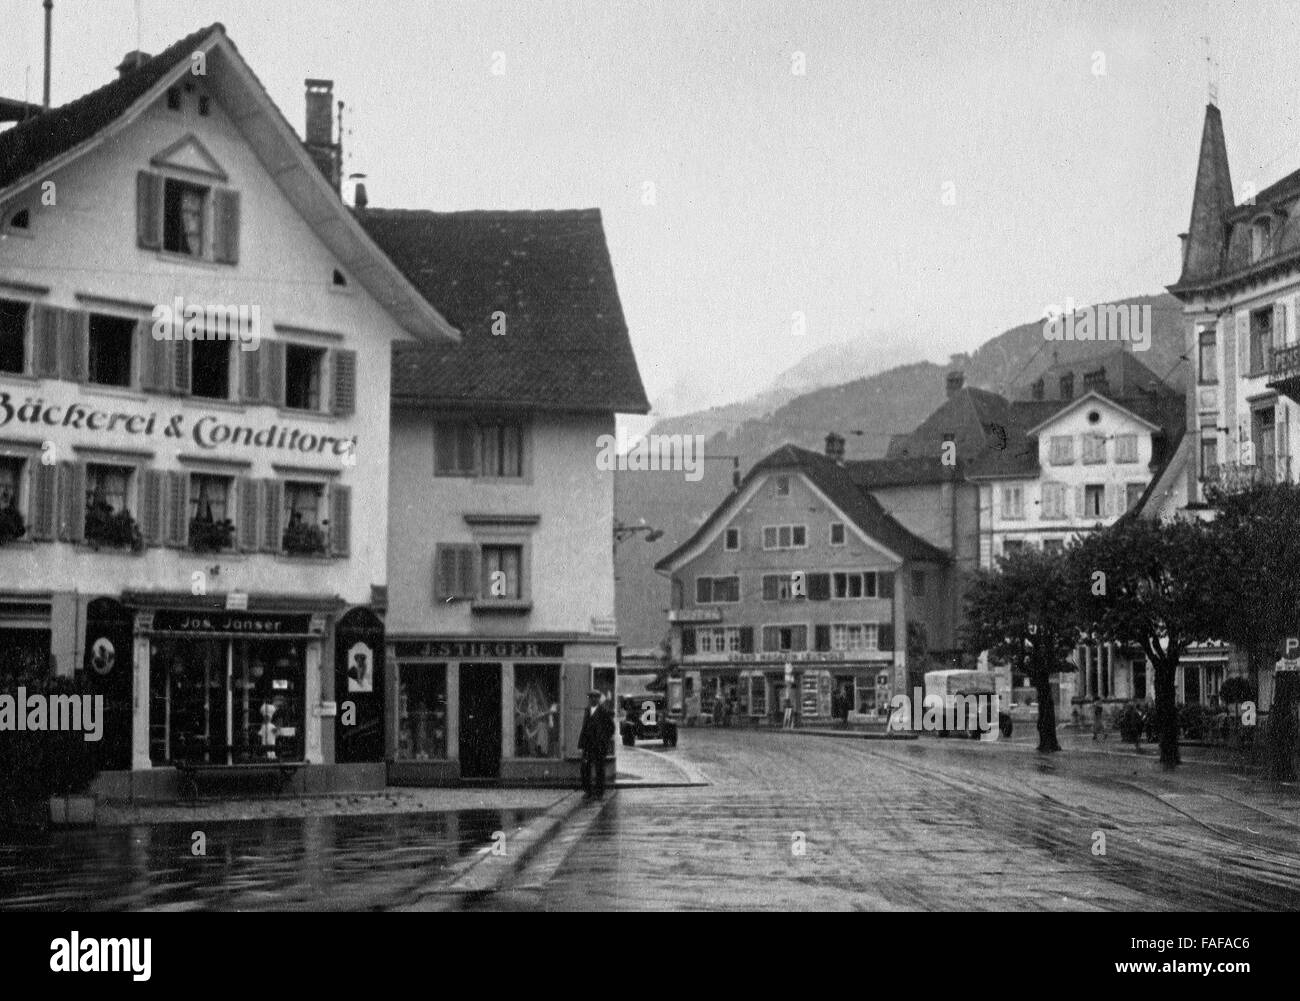 Bäckerei umnd Konditorei von Johann Janser in der Ortschaft Brunnen, Schweiz 1930er Jahre. Johann Janser's bakery at the town of Brunnen, Switzerland 1930s. Stock Photo